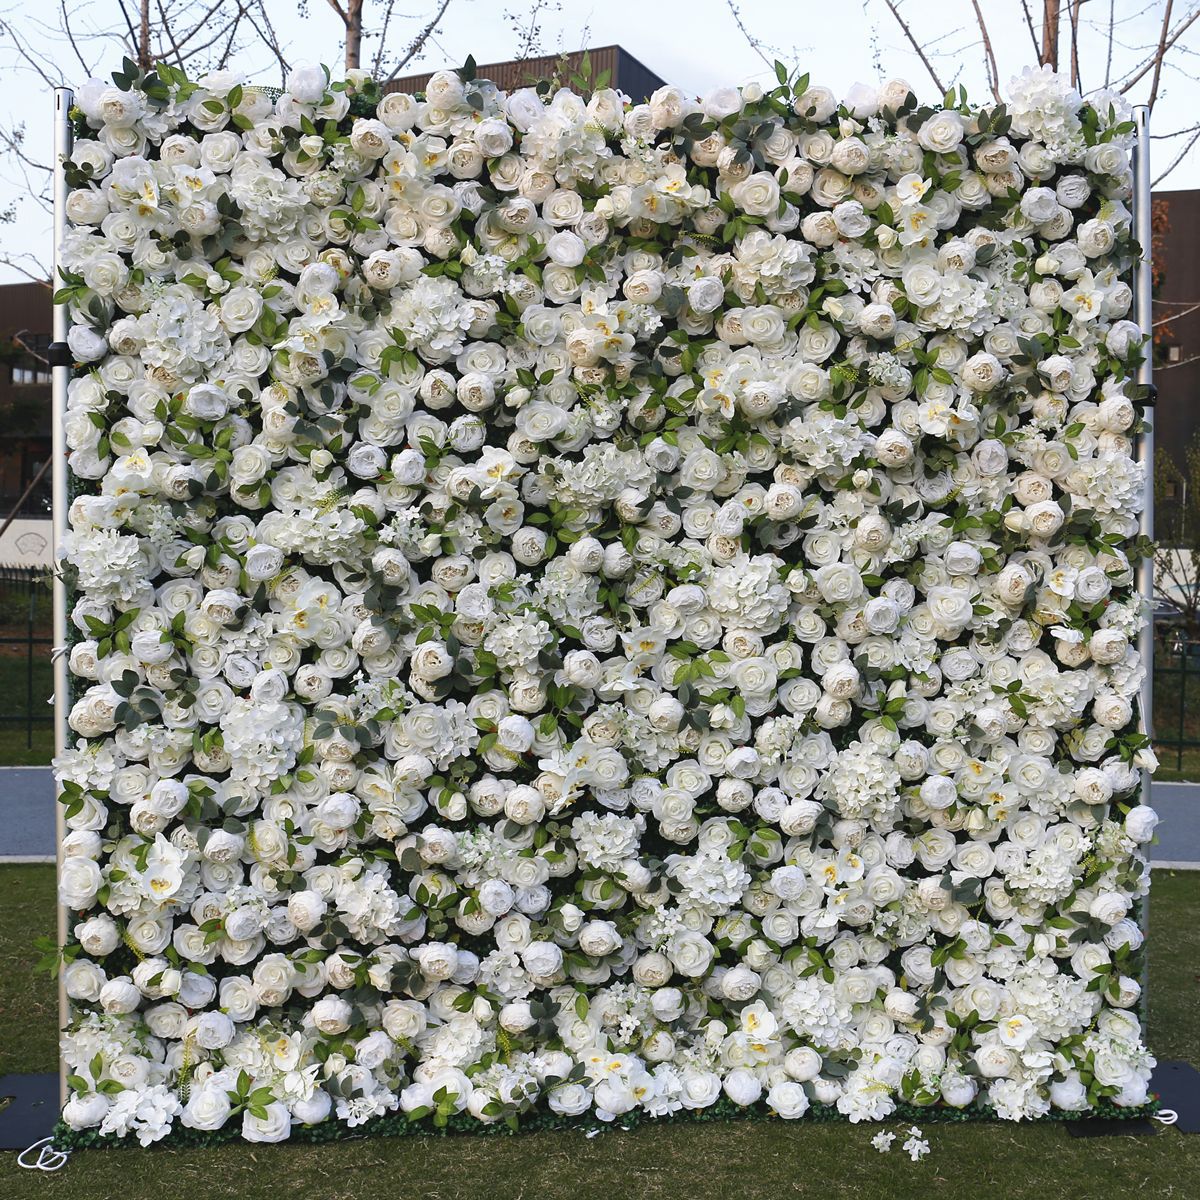 White cloth bottom flower wall background wall Wedding simulation flower Wedding mall window decoration background peony flower wall